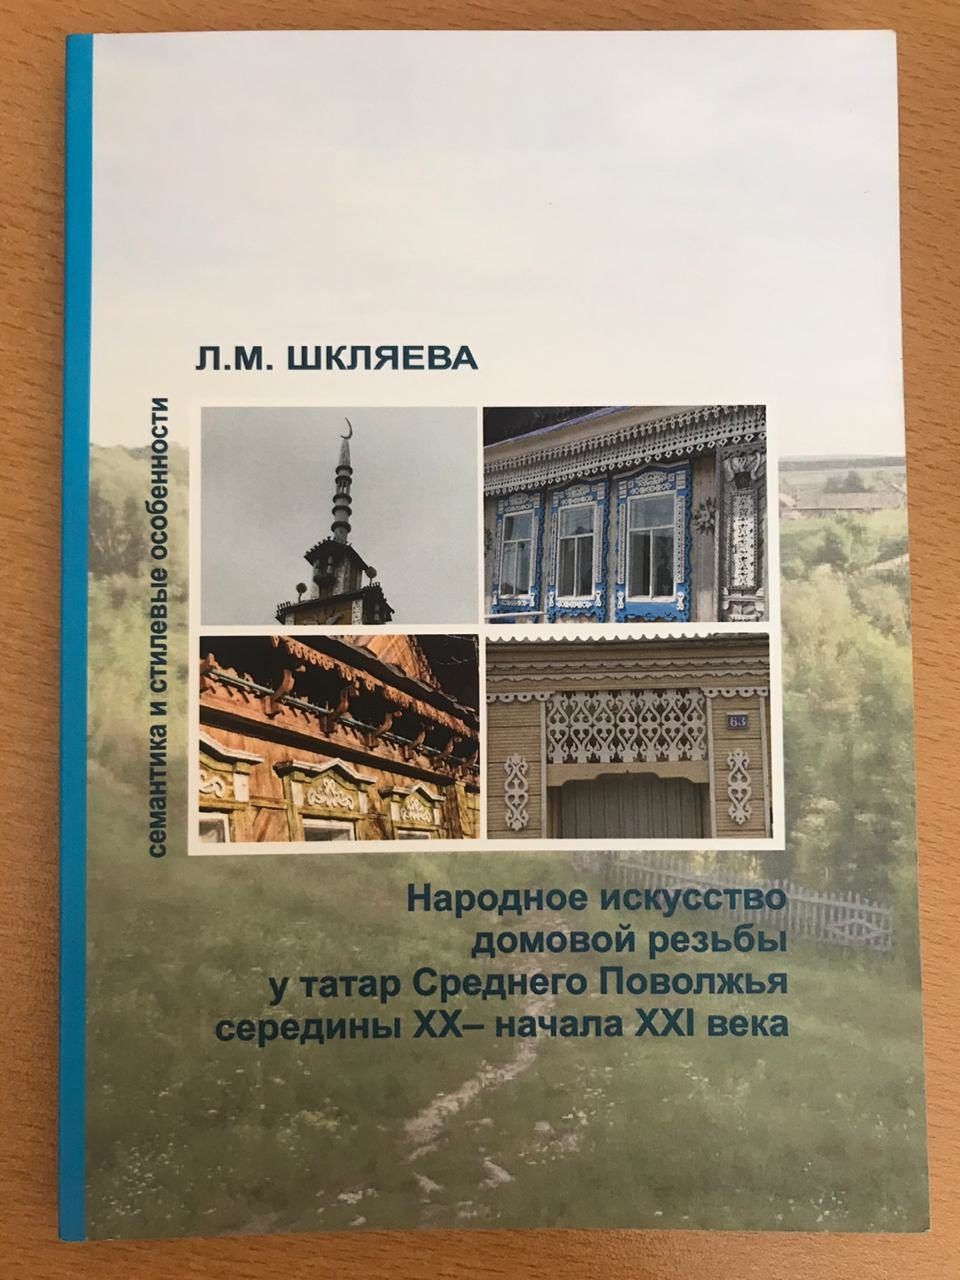 В Культурном центре имени Якова Емельянова появилась новая книга